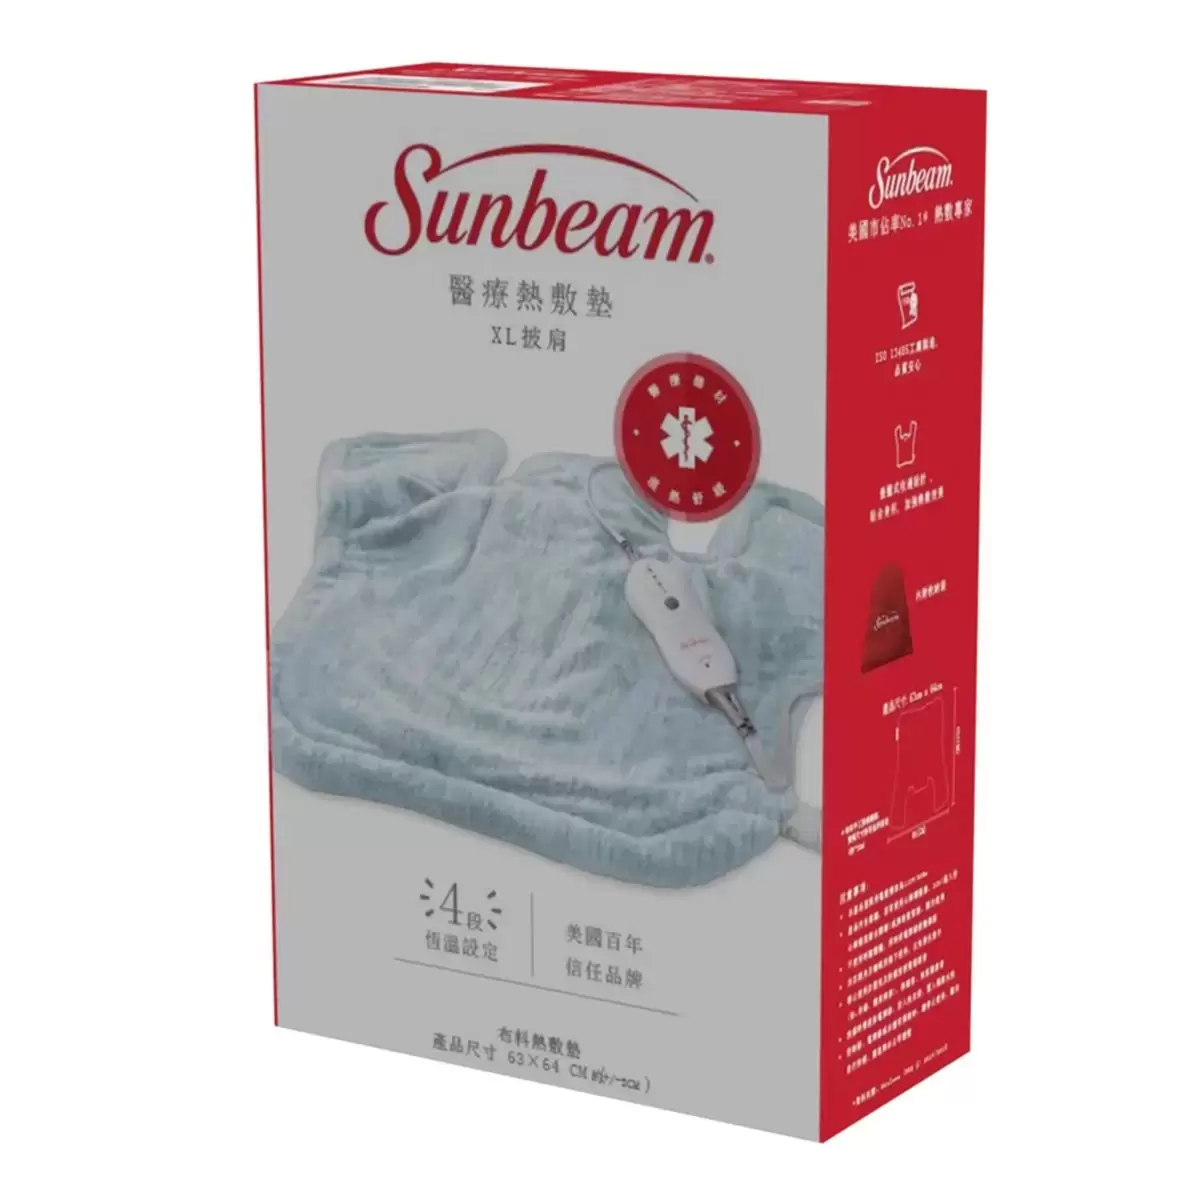 Sunbeam 夏繽 醫療用熱敷墊(未滅菌)